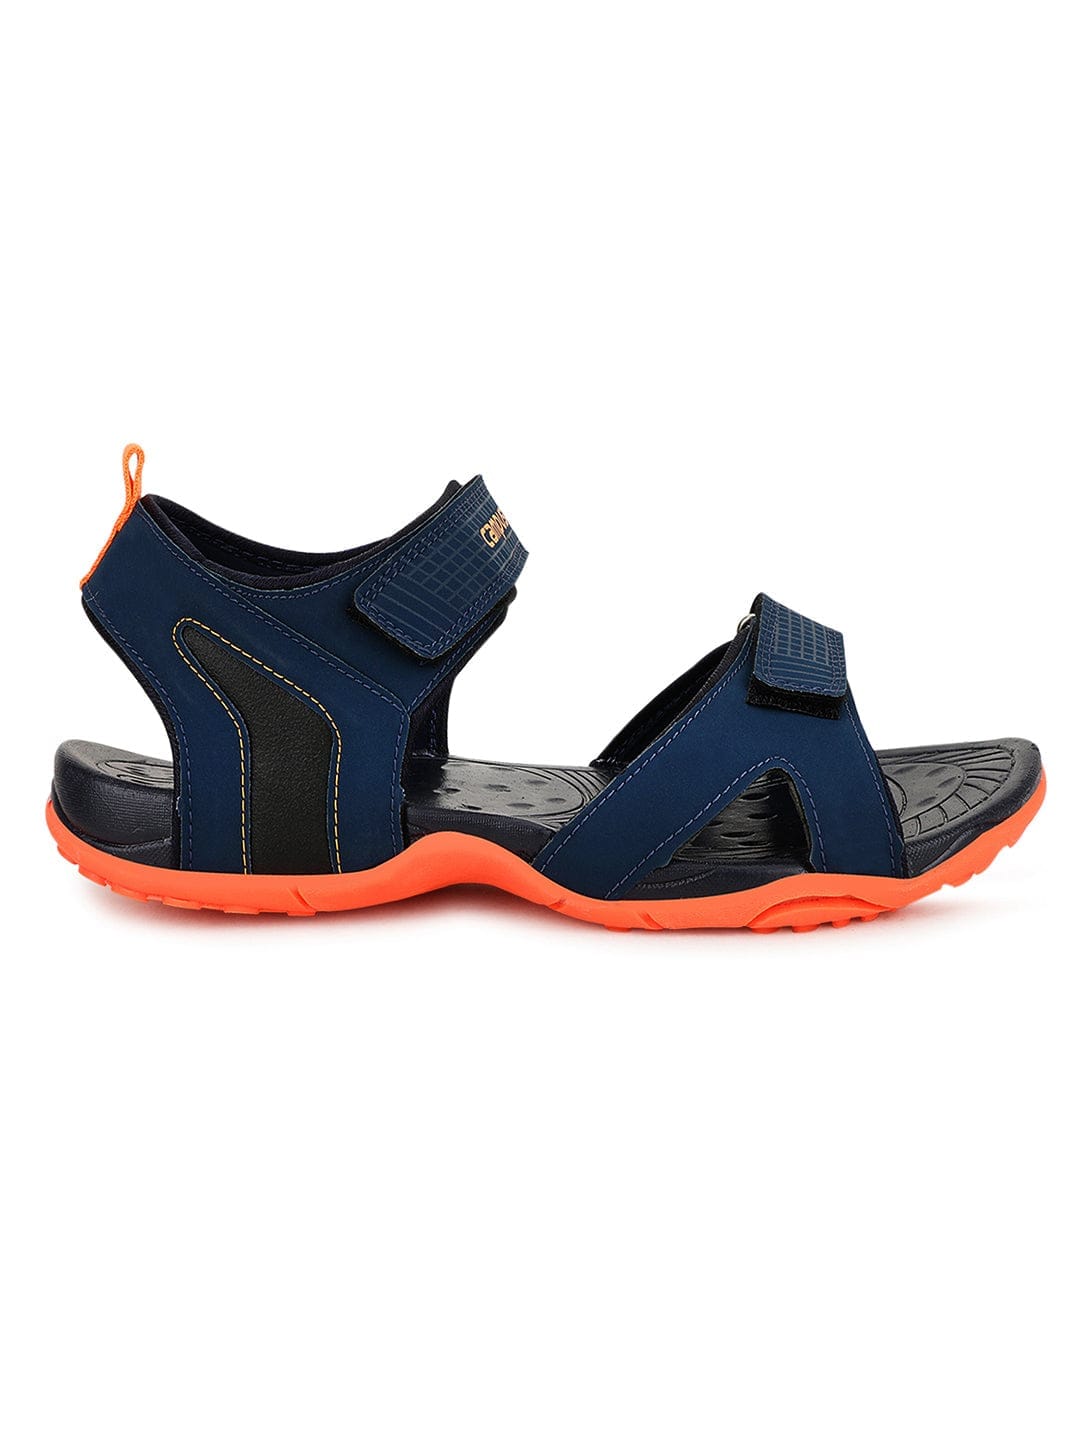 Buy Sandals For Men: Camp-Colt-M-Blu-Pista | Campus Shoes